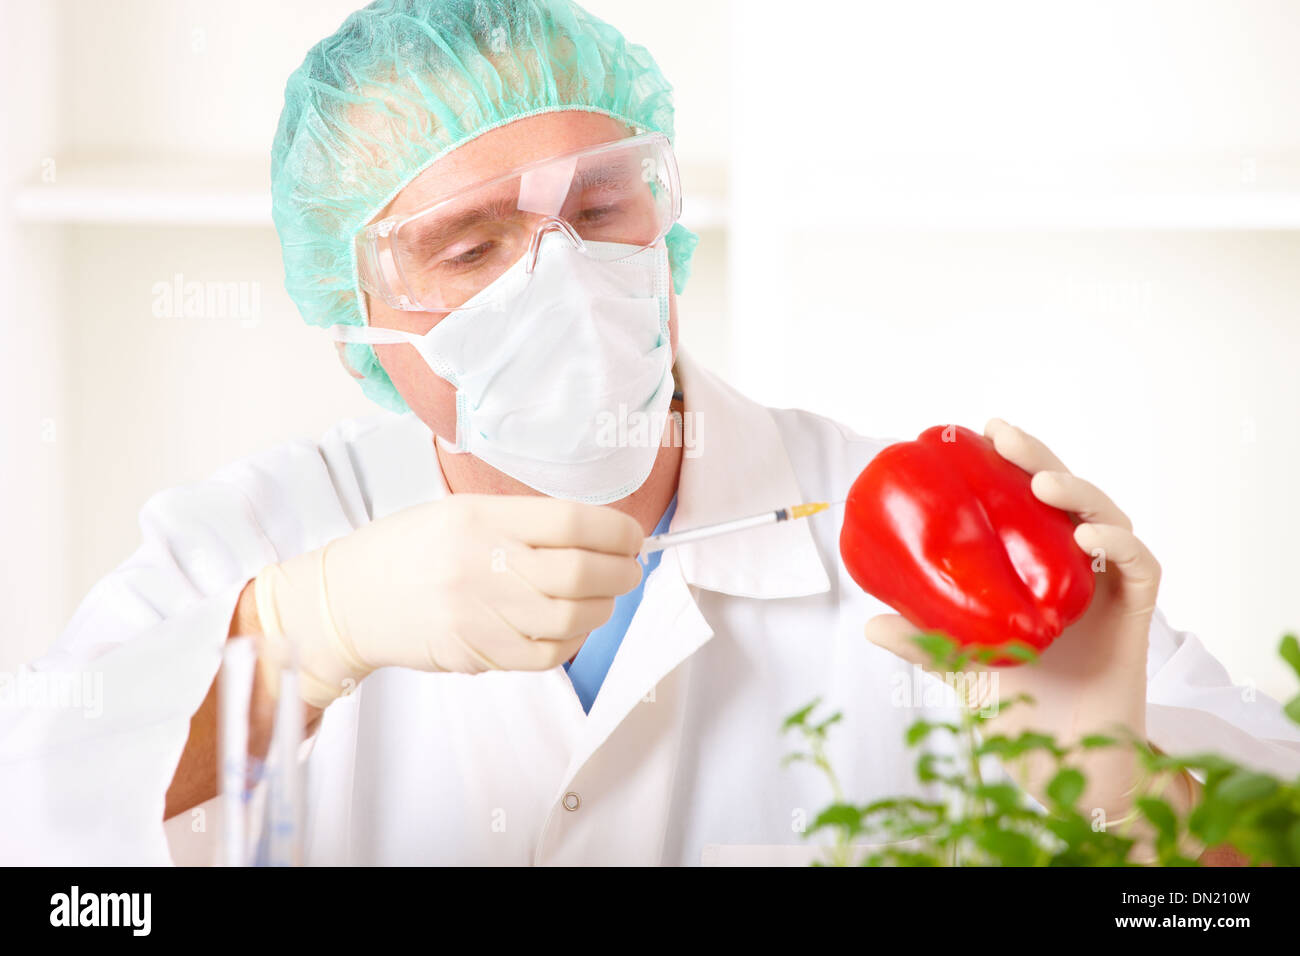 Un chercheur de légumes OGM Banque D'Images